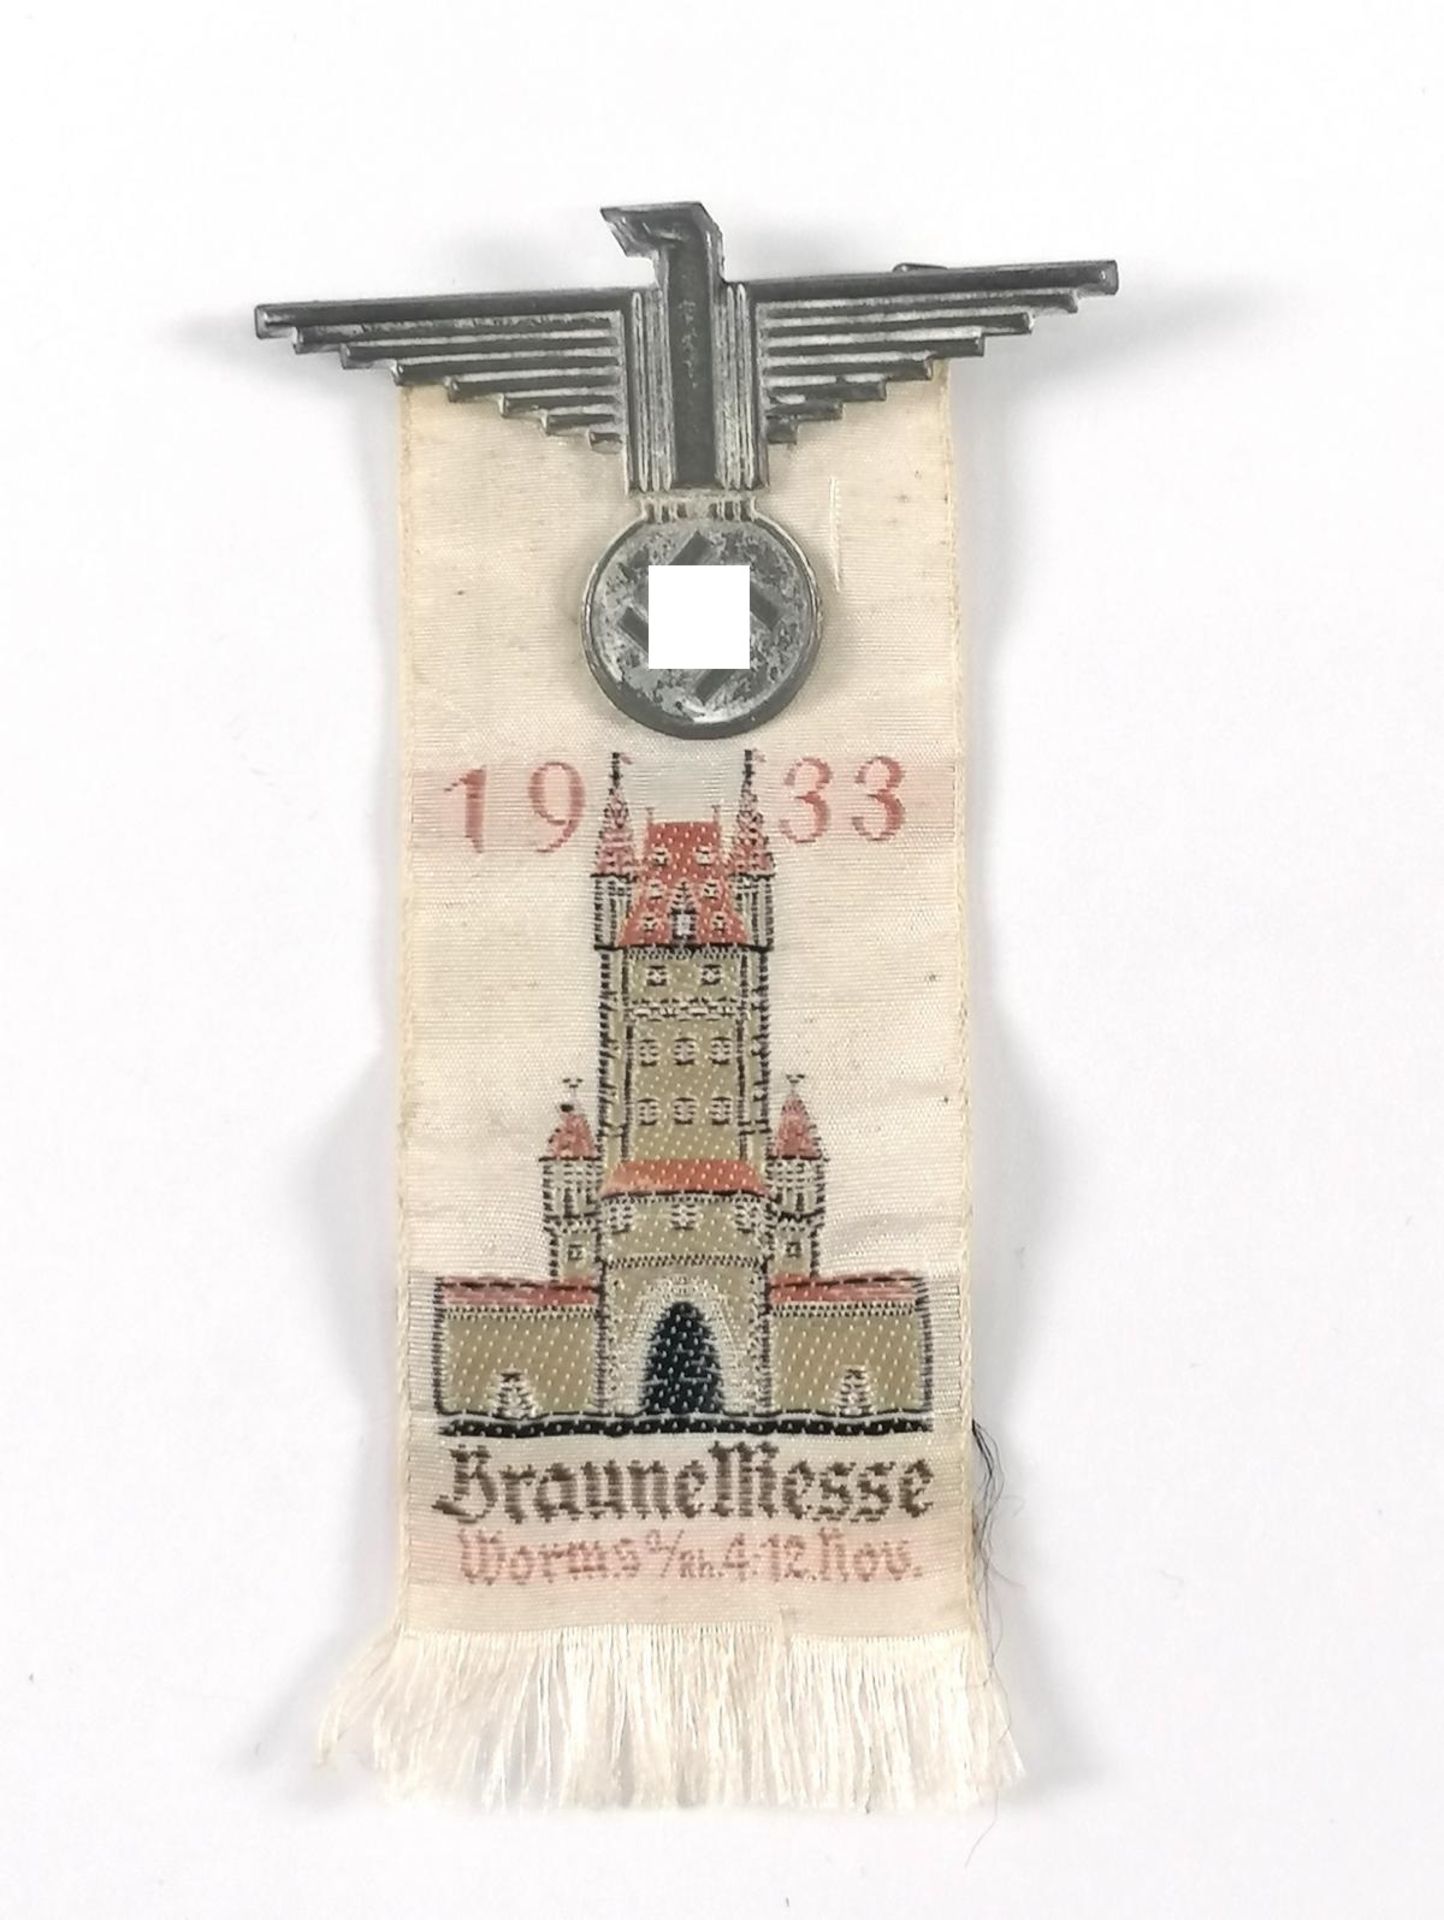 Anstecker / Seidenband: Braune Messe Worms 1933